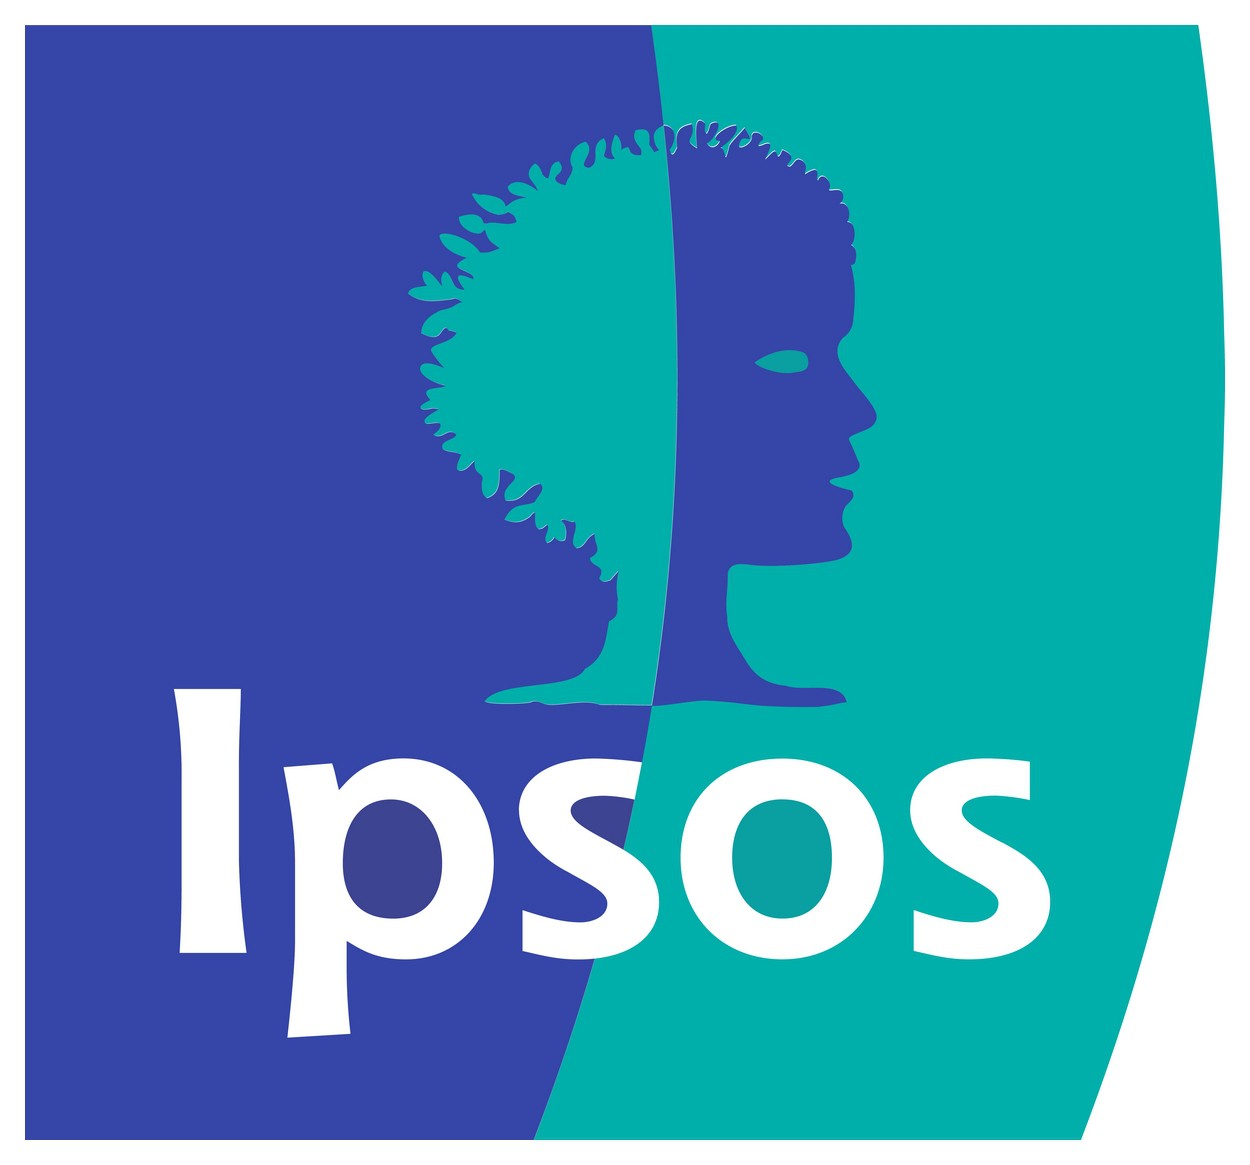 ipsos-logo